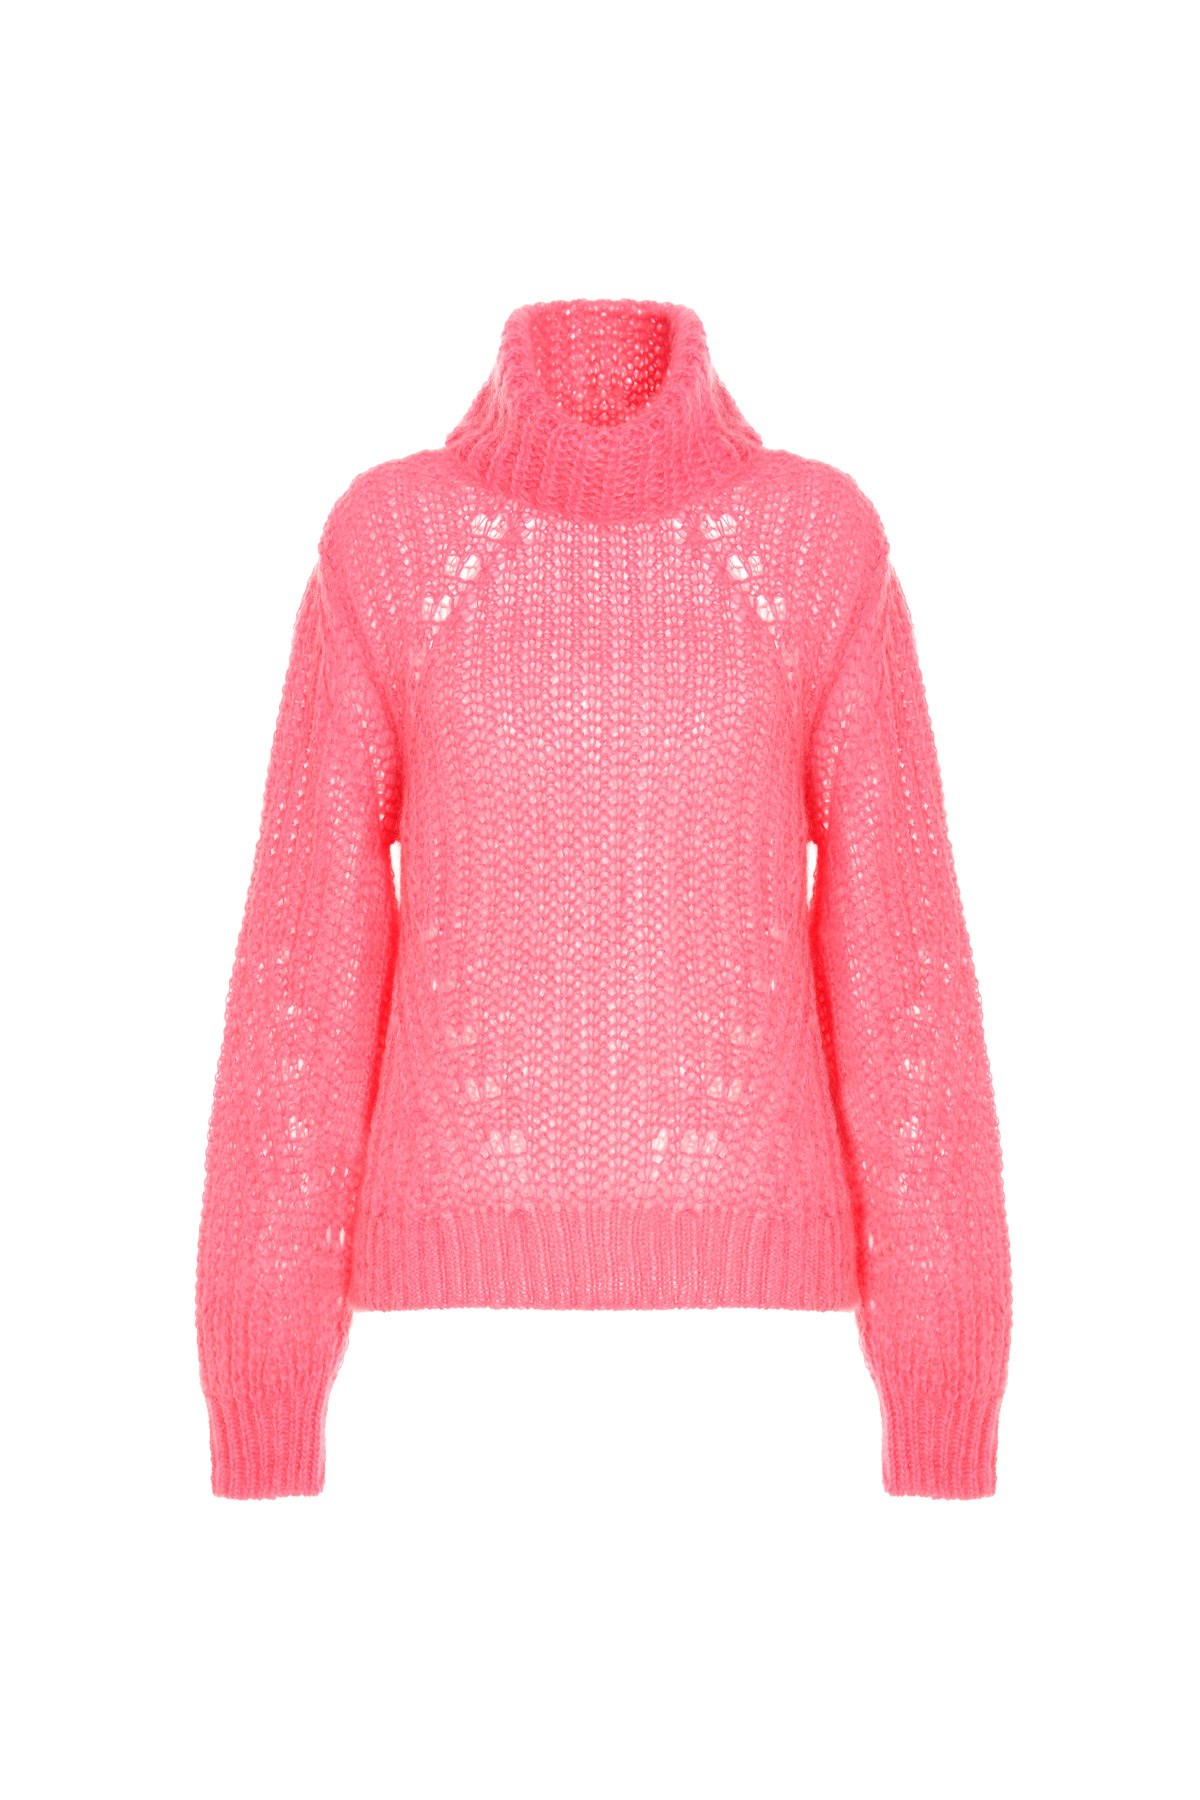 P.A.R.O.S.H. 'Luz’ Sweater